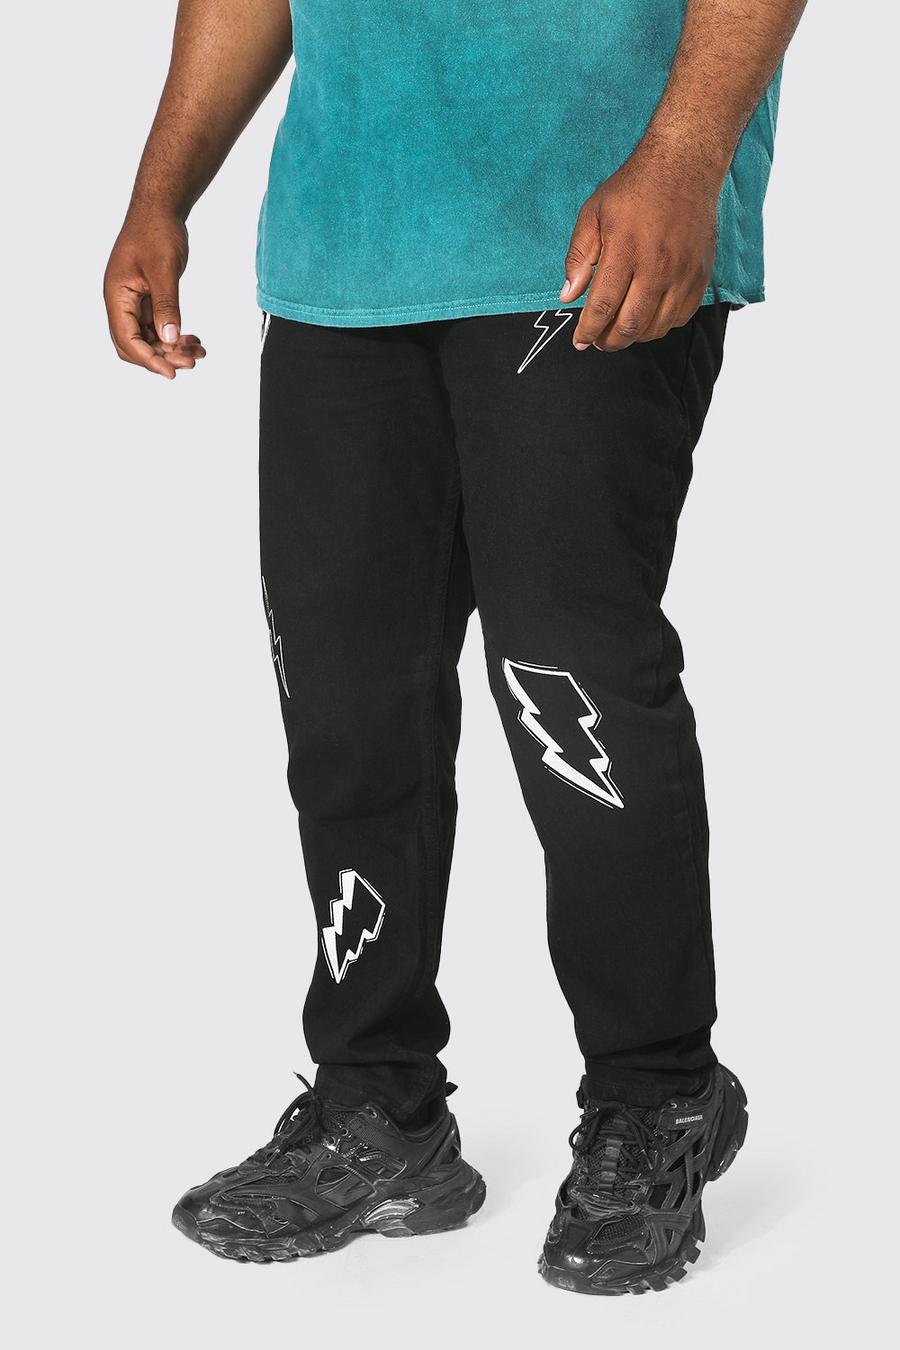 שחור אמיתי סקיני ג׳ינס מבד קשיח עם הדפס ברקים, למידות גדולות image number 1